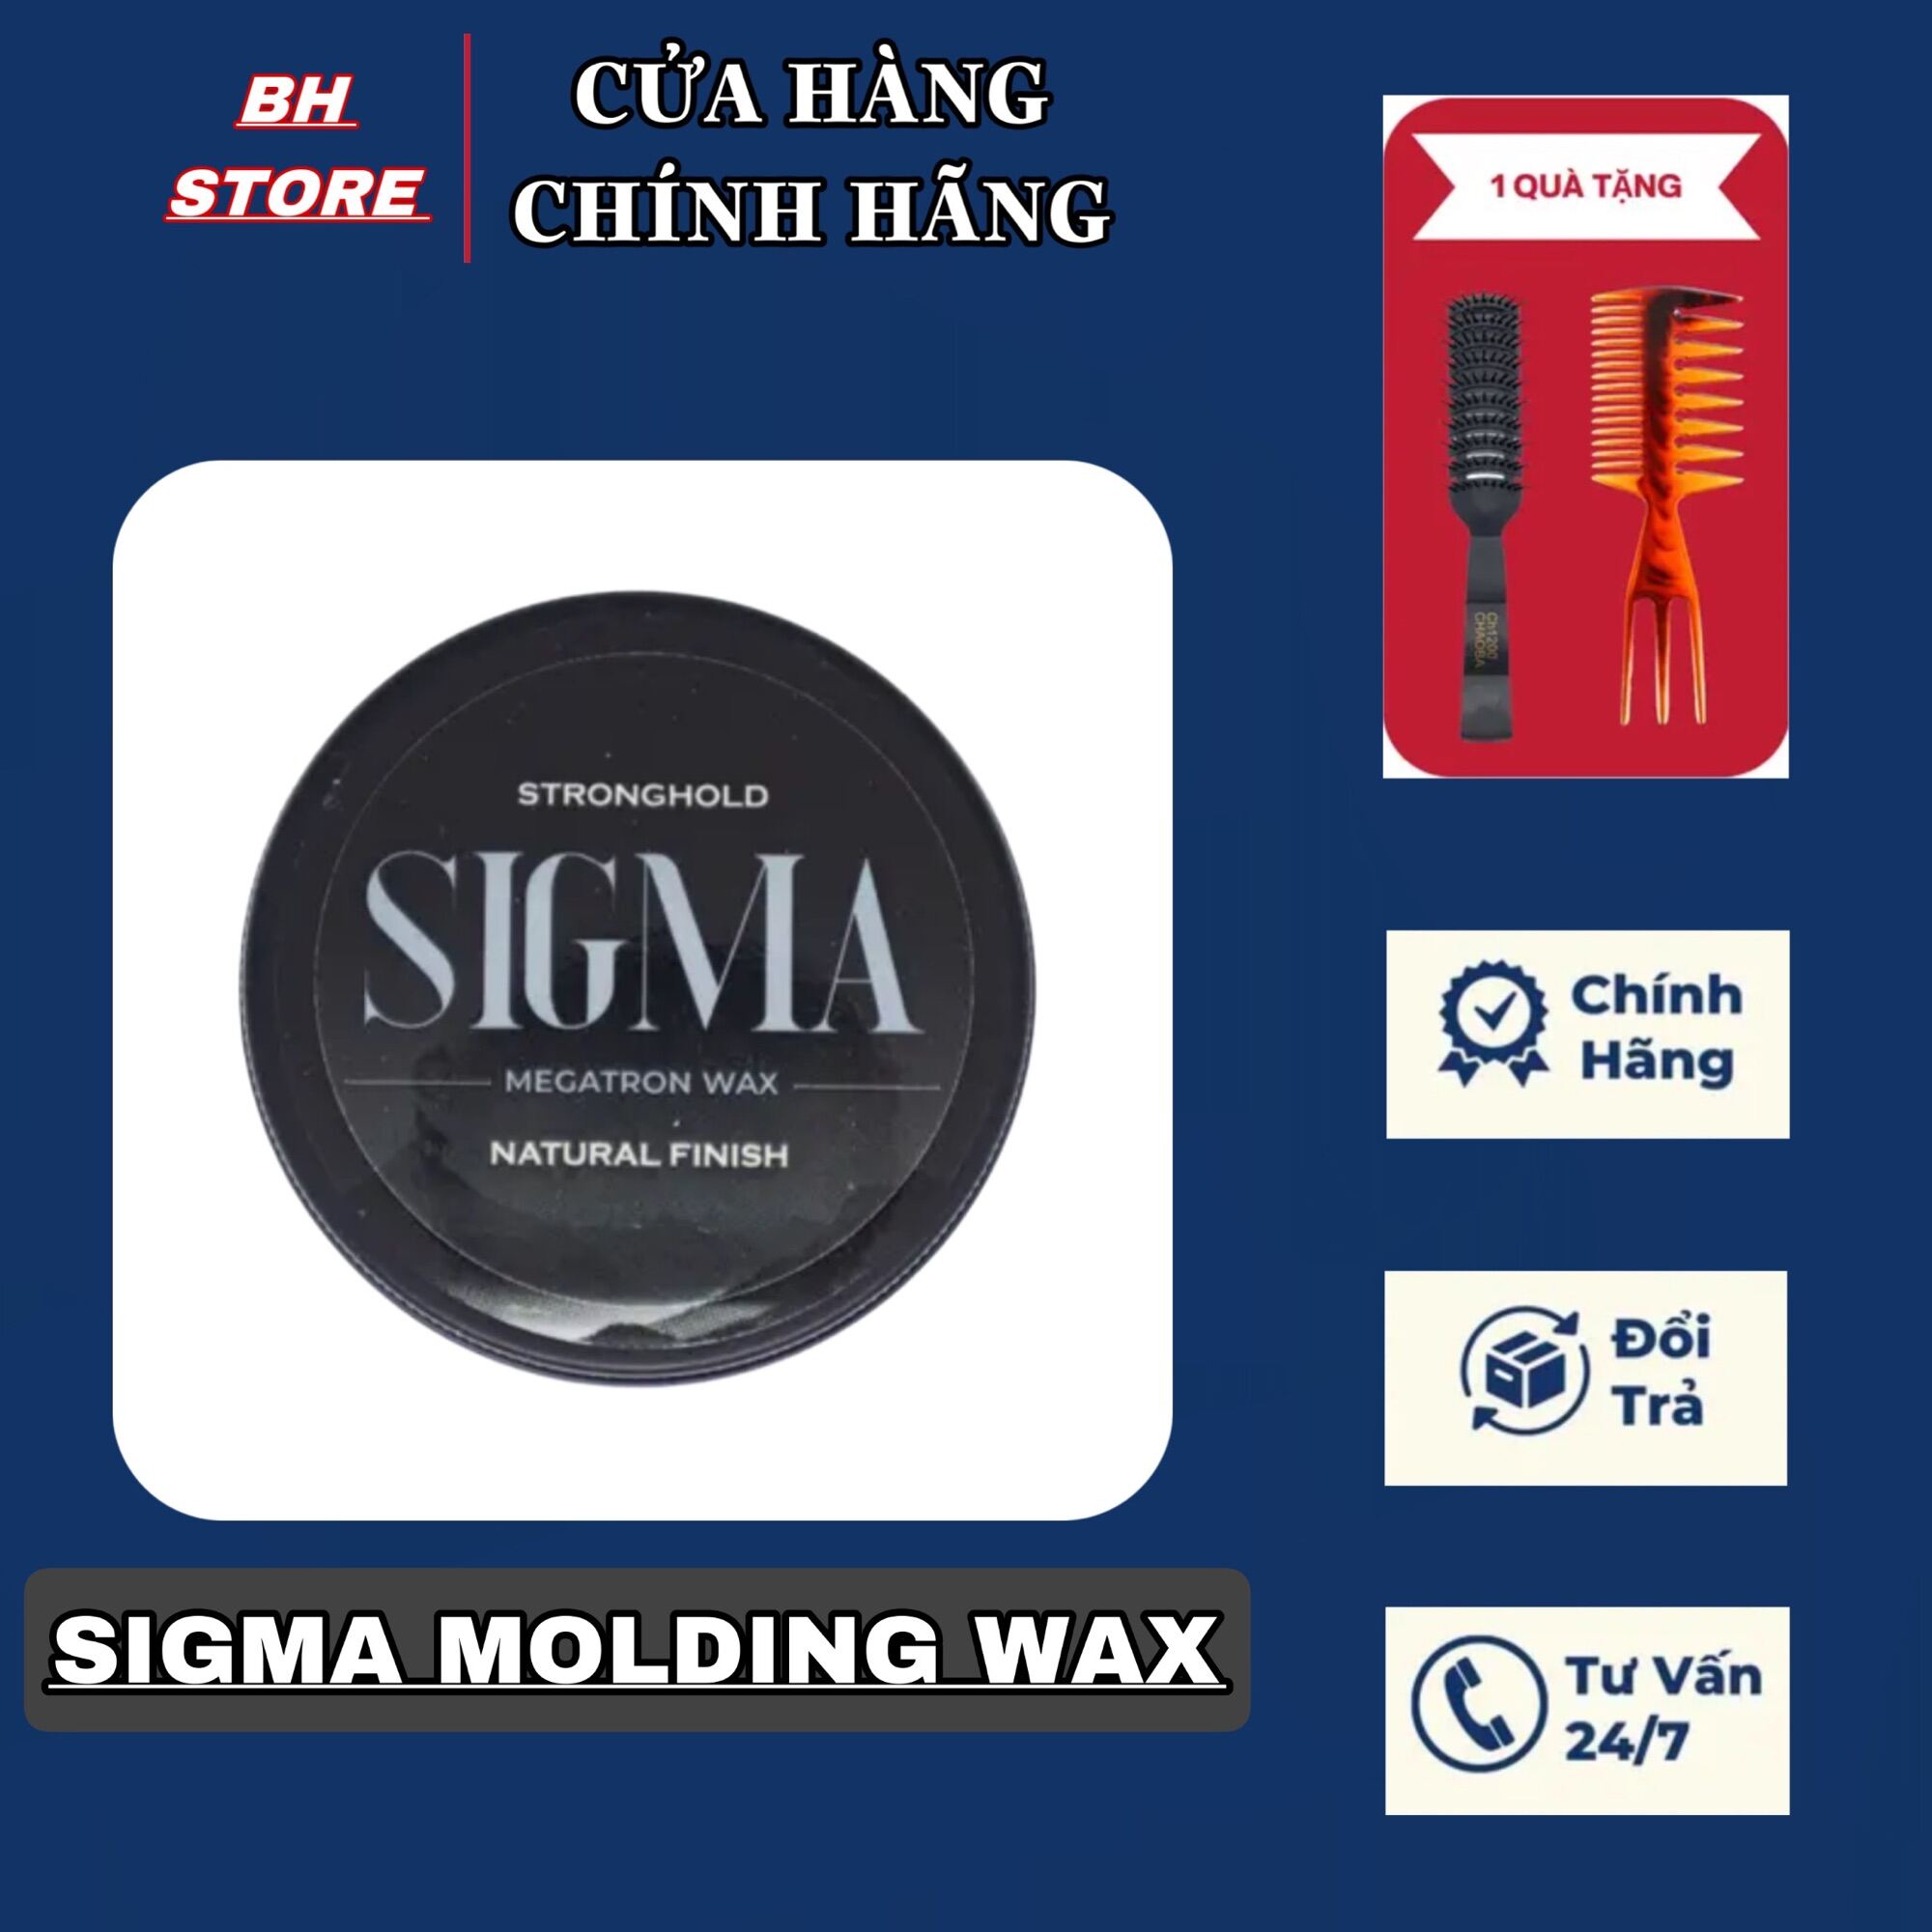 Sáp Vuốt Tóc Nam Sigma Molding Wax đem đến cho bạn một mái tóc bóng bẩy, đẹp mắt và gọn gàng mà không gây bết dính. Chất lượng sản phẩm thật sự đáng để trải nghiệm. Hãy xem ngay hình ảnh liên quan để cảm nhận sự khác biệt.